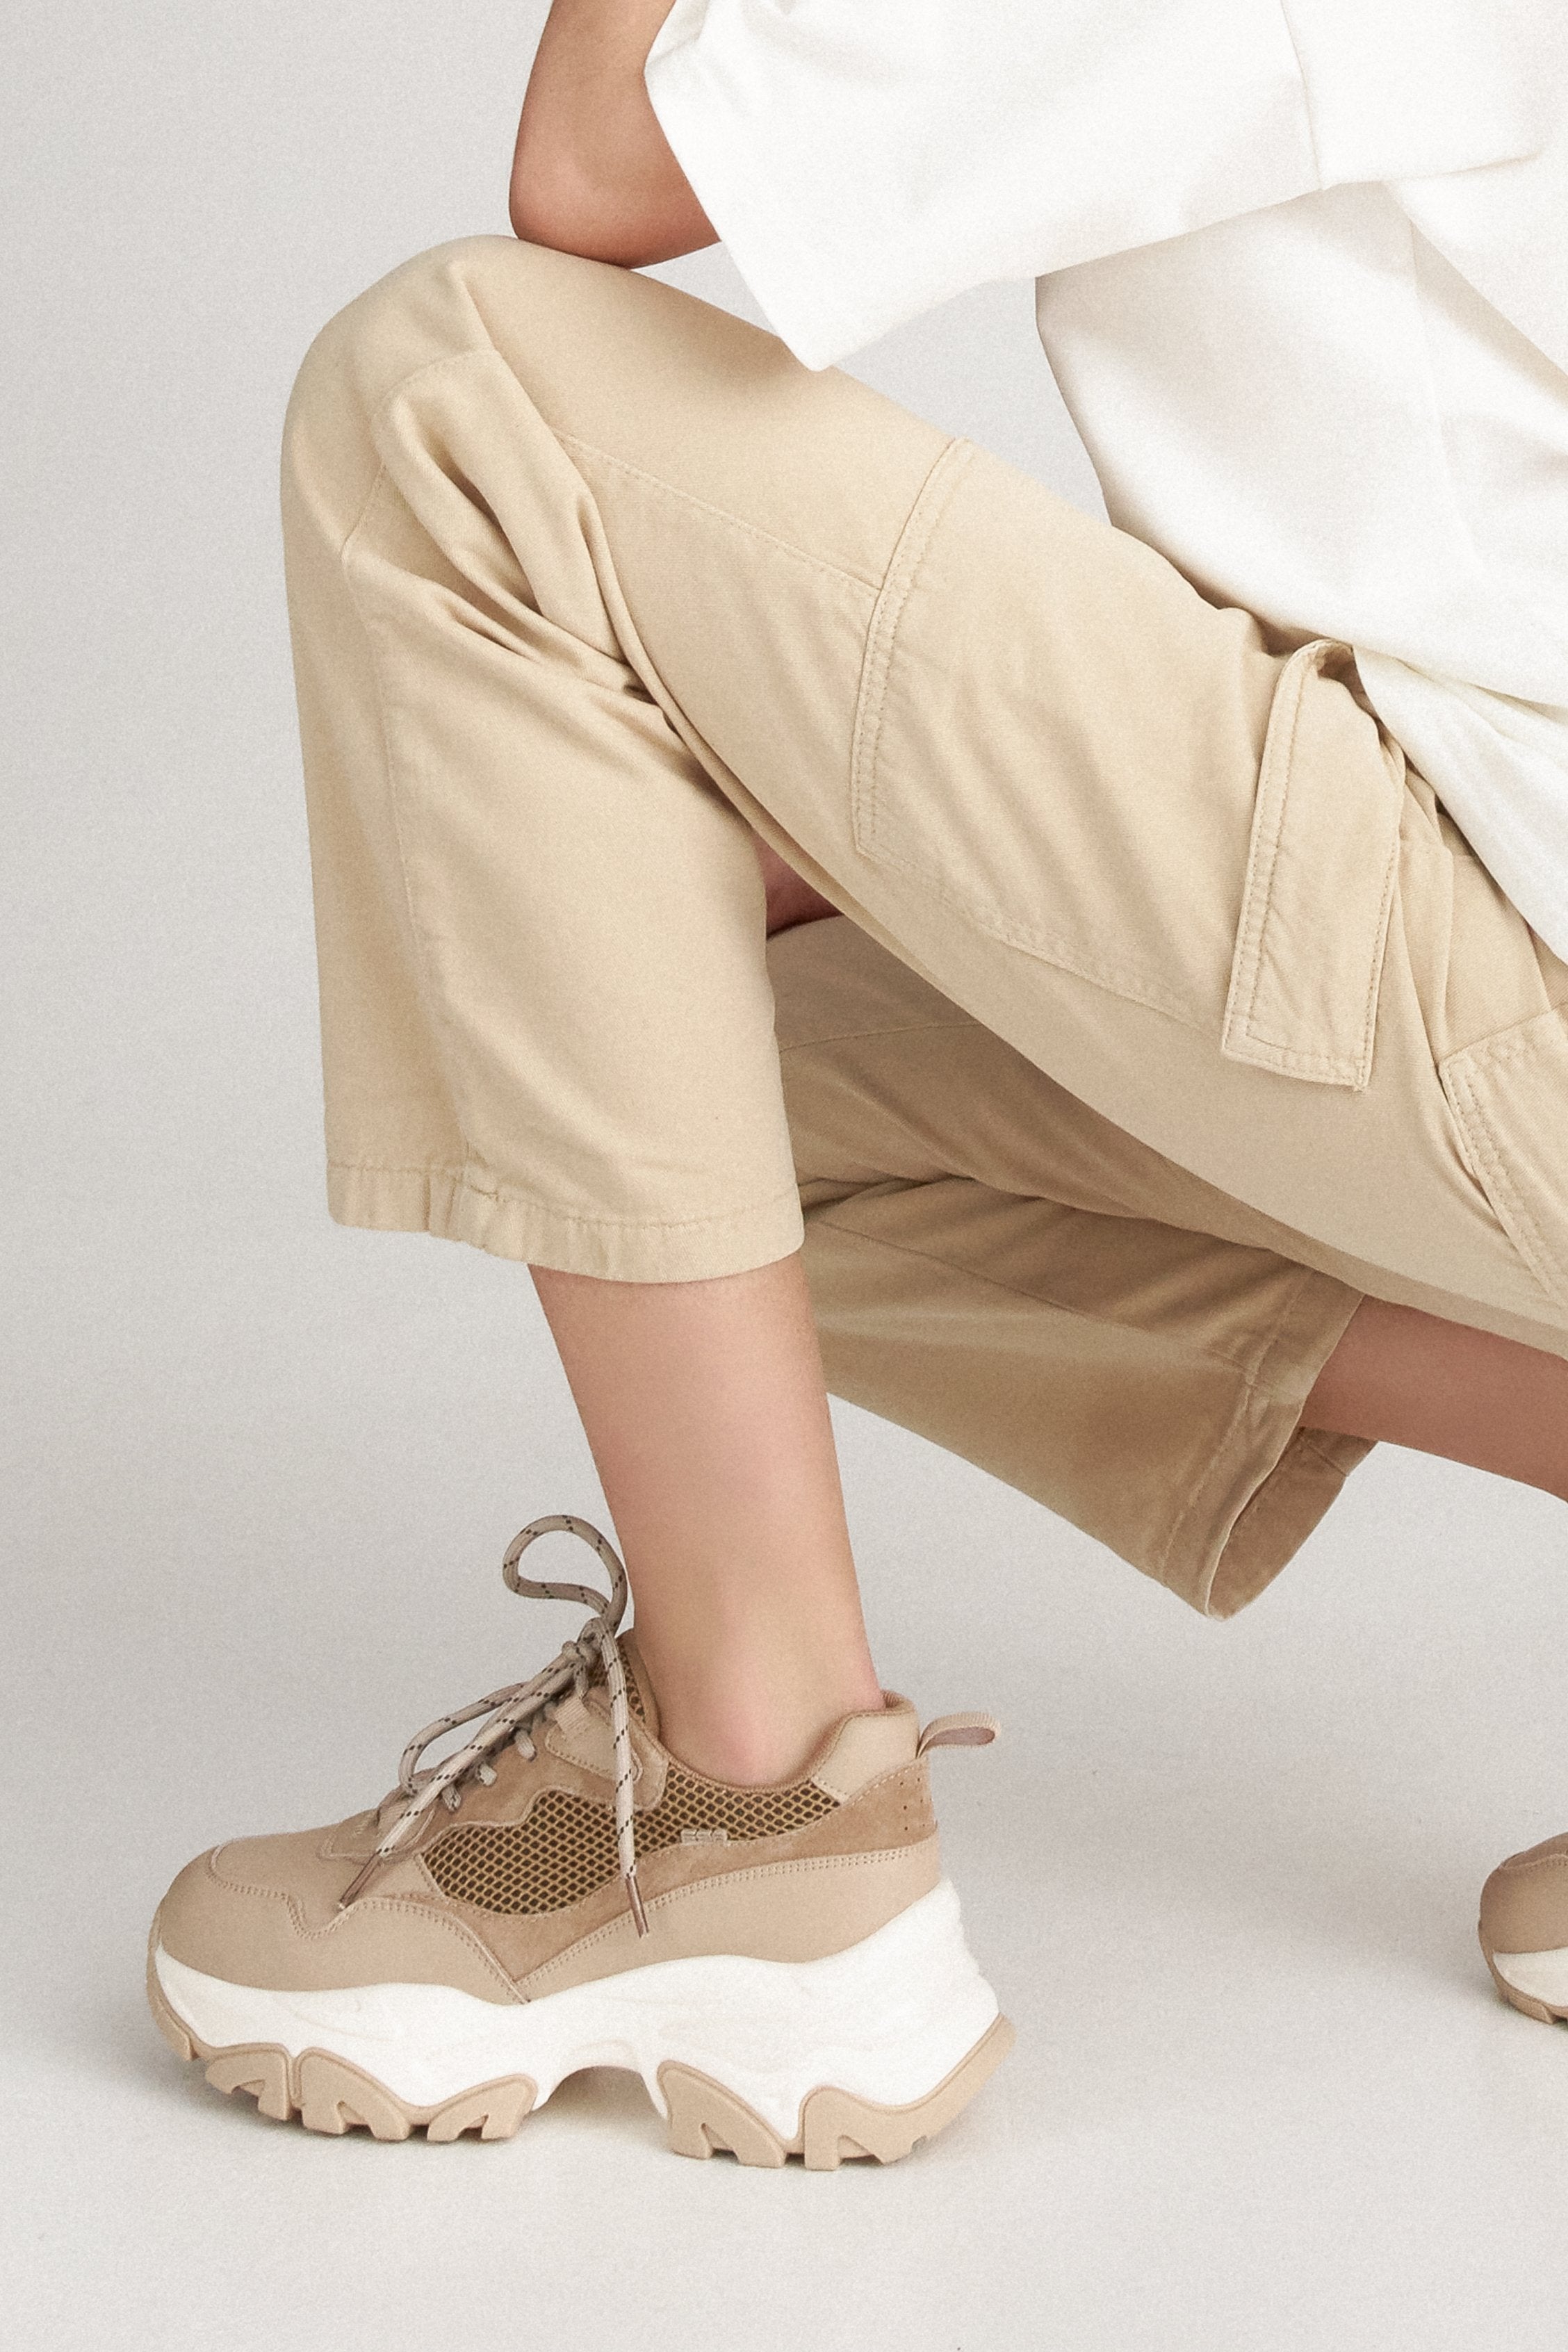 Sneakersy damskie ES 8 ze skóry naturalnej, brązowo-beżowe - prezentacja obuwia na modelce.